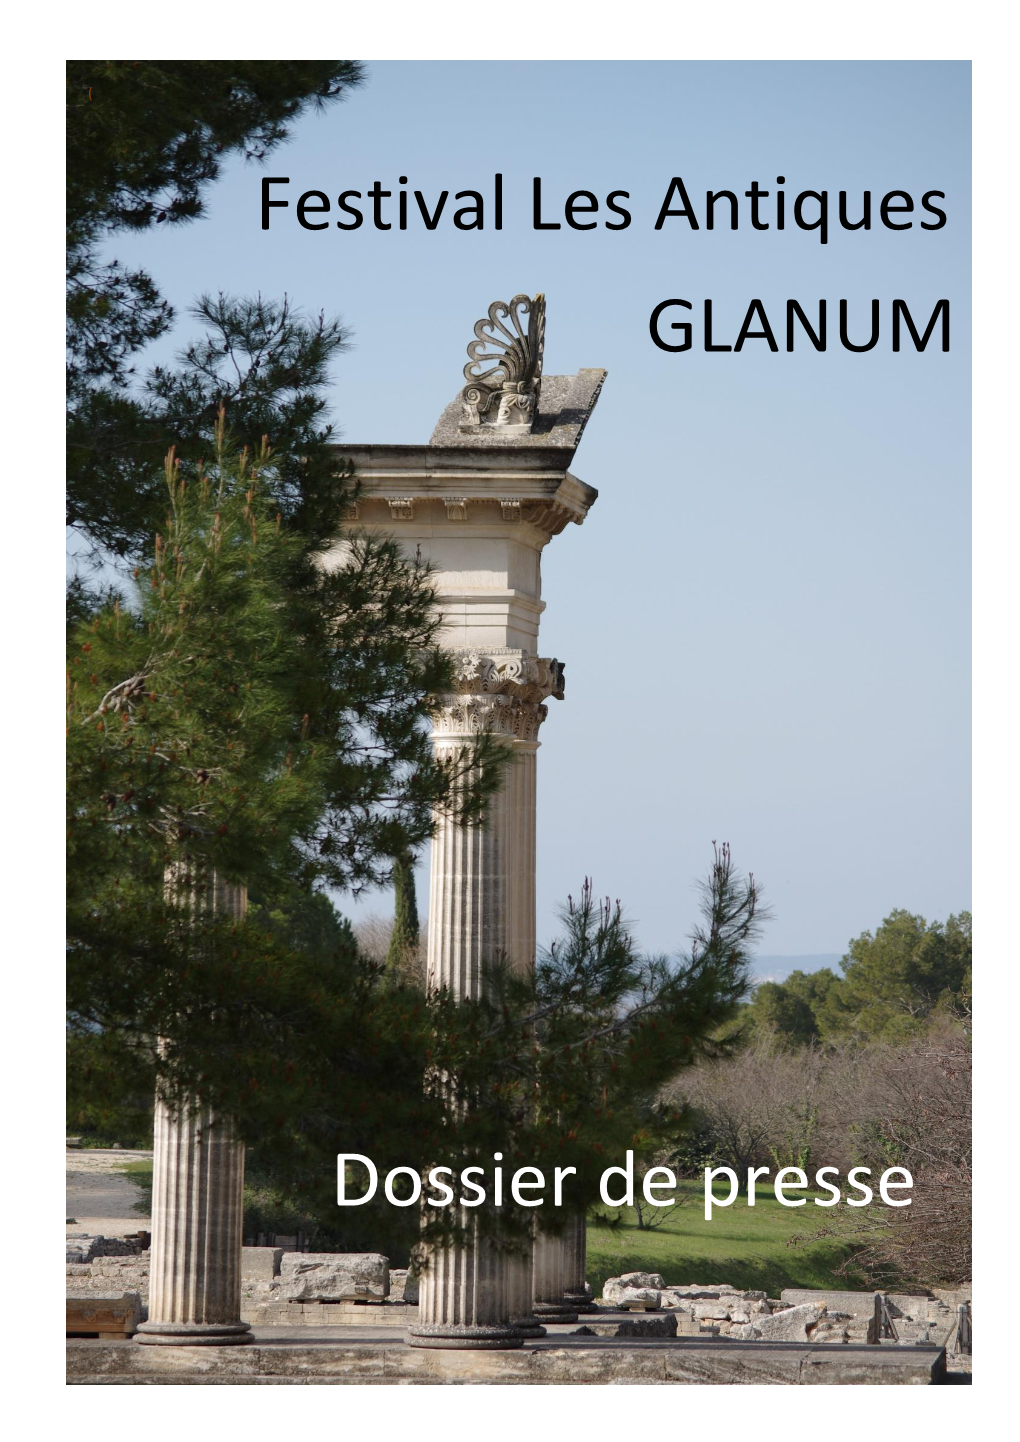 Festival Les Antiques GLANUM Dossier De Presse